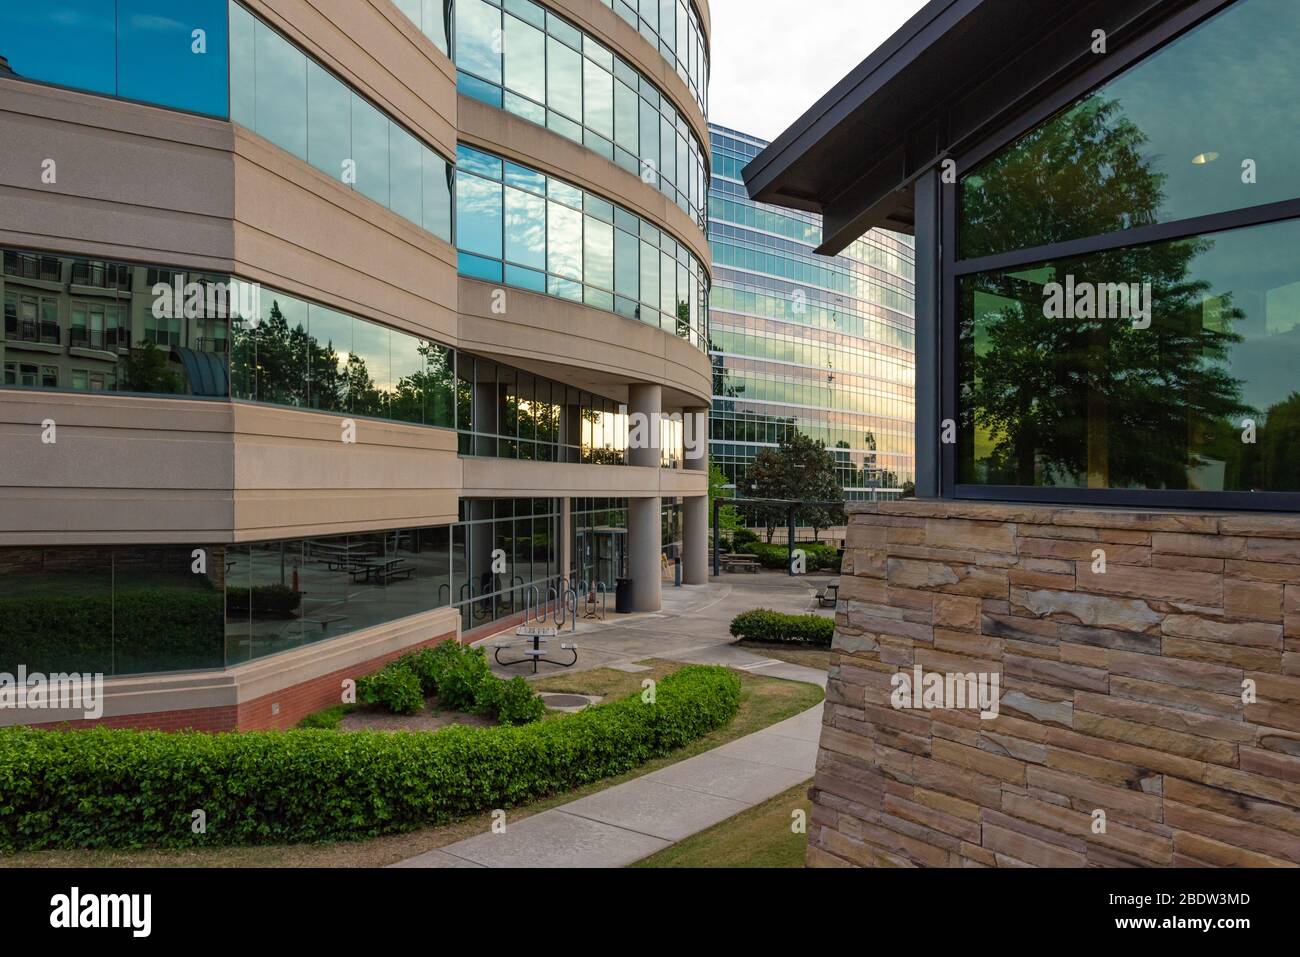 CDC (Mitten zur Krankheit-Steuerung) Hauptsitz in Atlanta, Georgia. (USA) Stockfoto